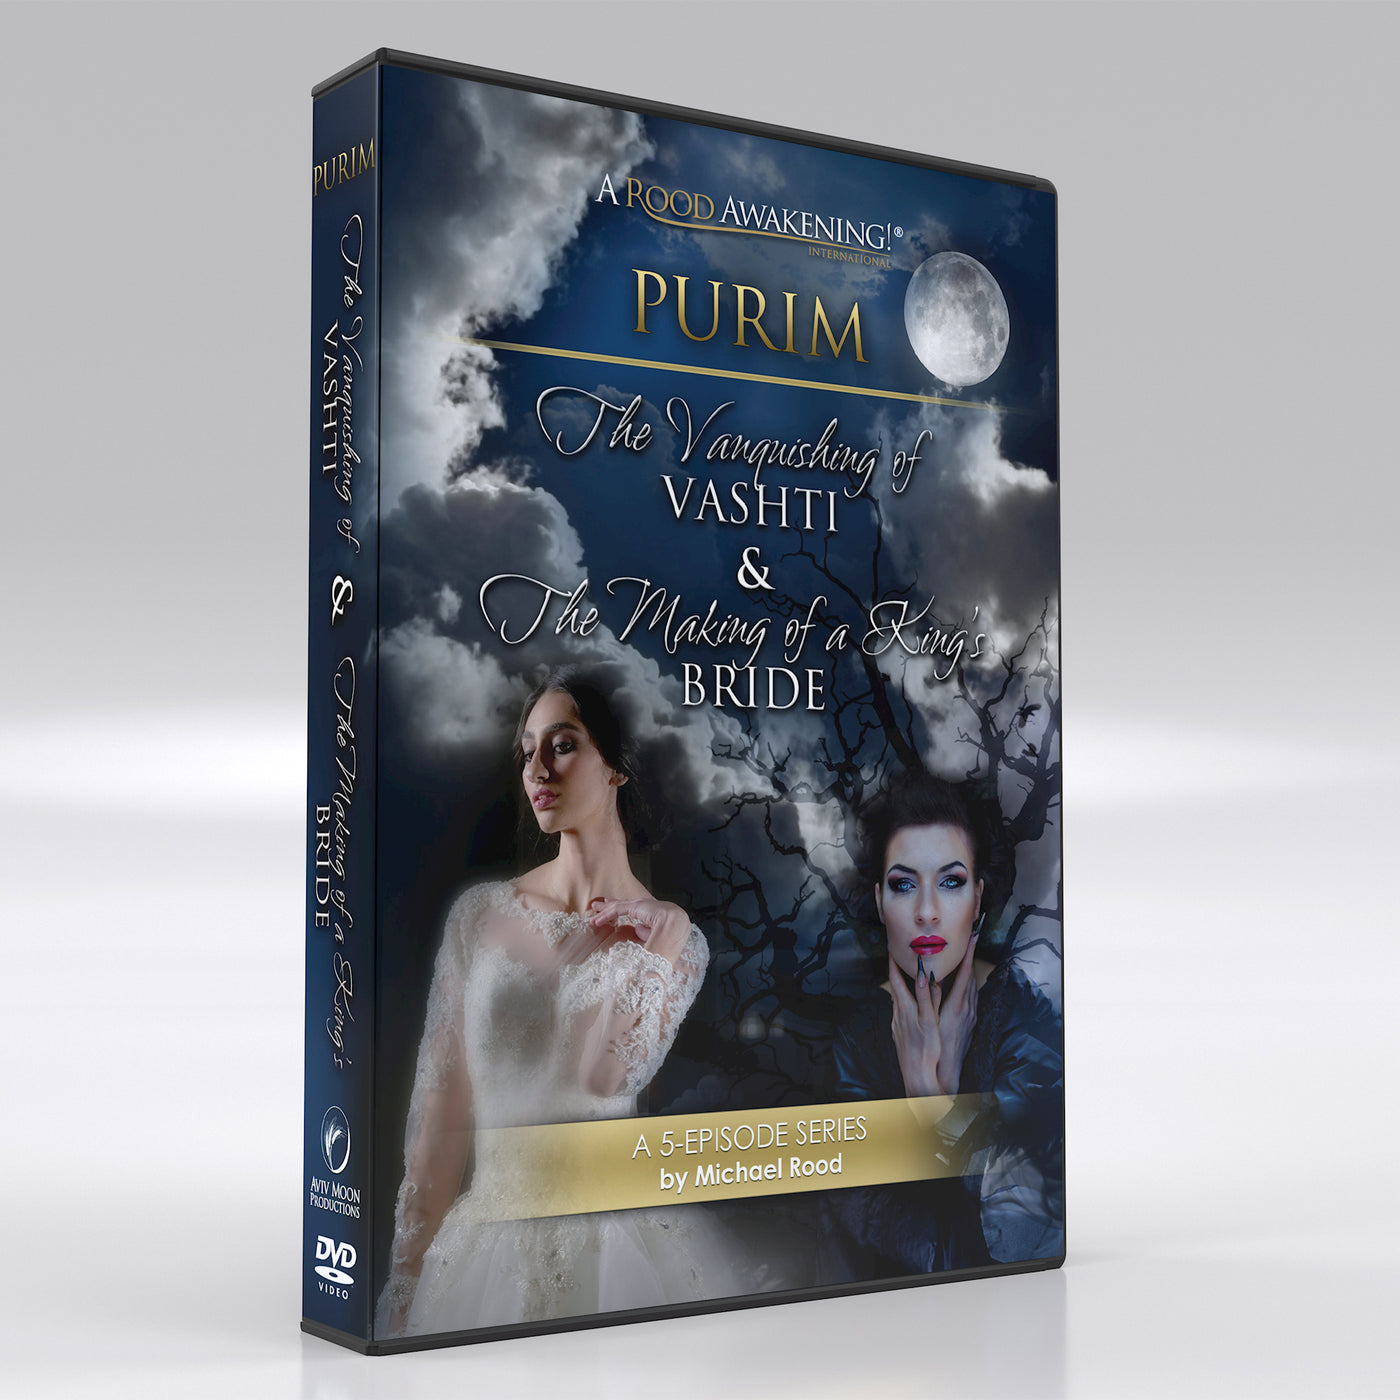 Purim: The Vanquishing of Vashti & The Making of A King's Bride